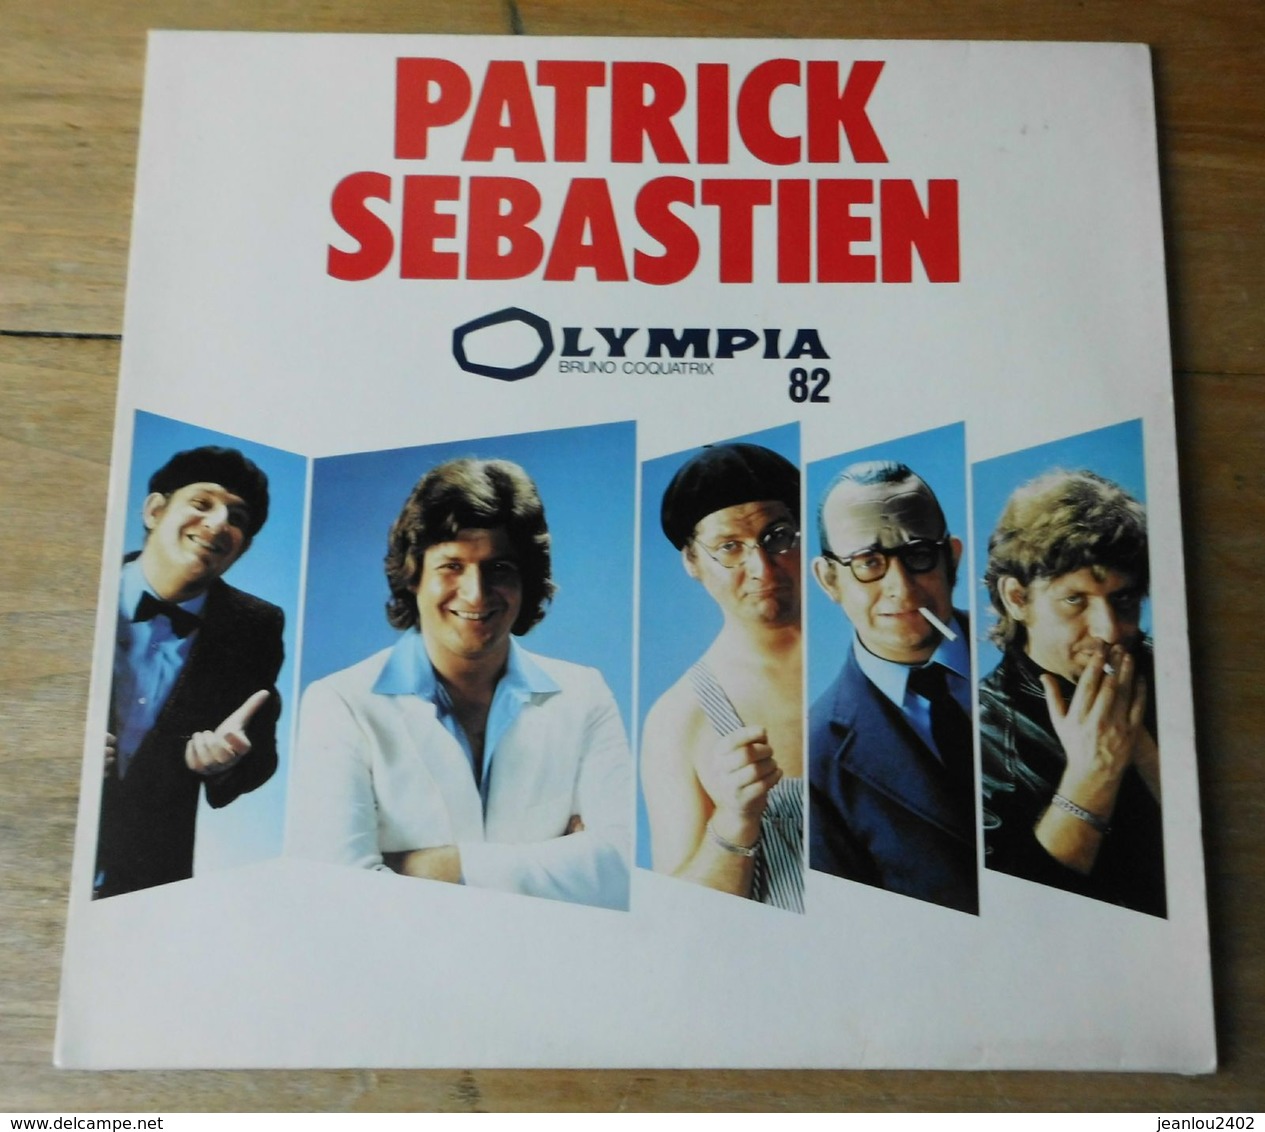 Vinyle "Patrick Sebastien" "Olympia 82" - Comiche